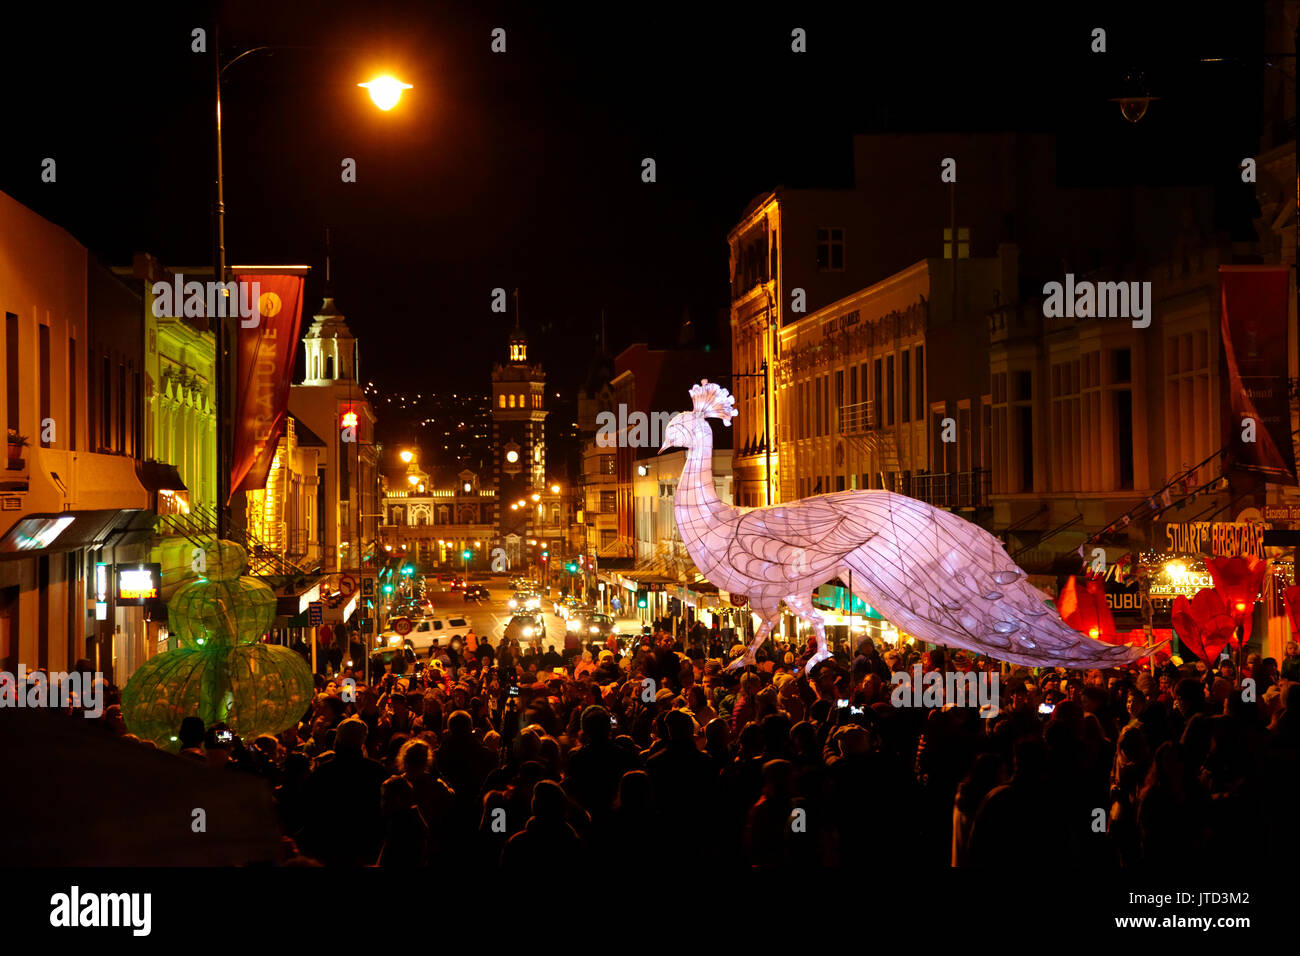 Lantern parade, Carnaval de la mi-hiver, l'octogone, Dunedin, île du Sud, Nouvelle-Zélande Banque D'Images